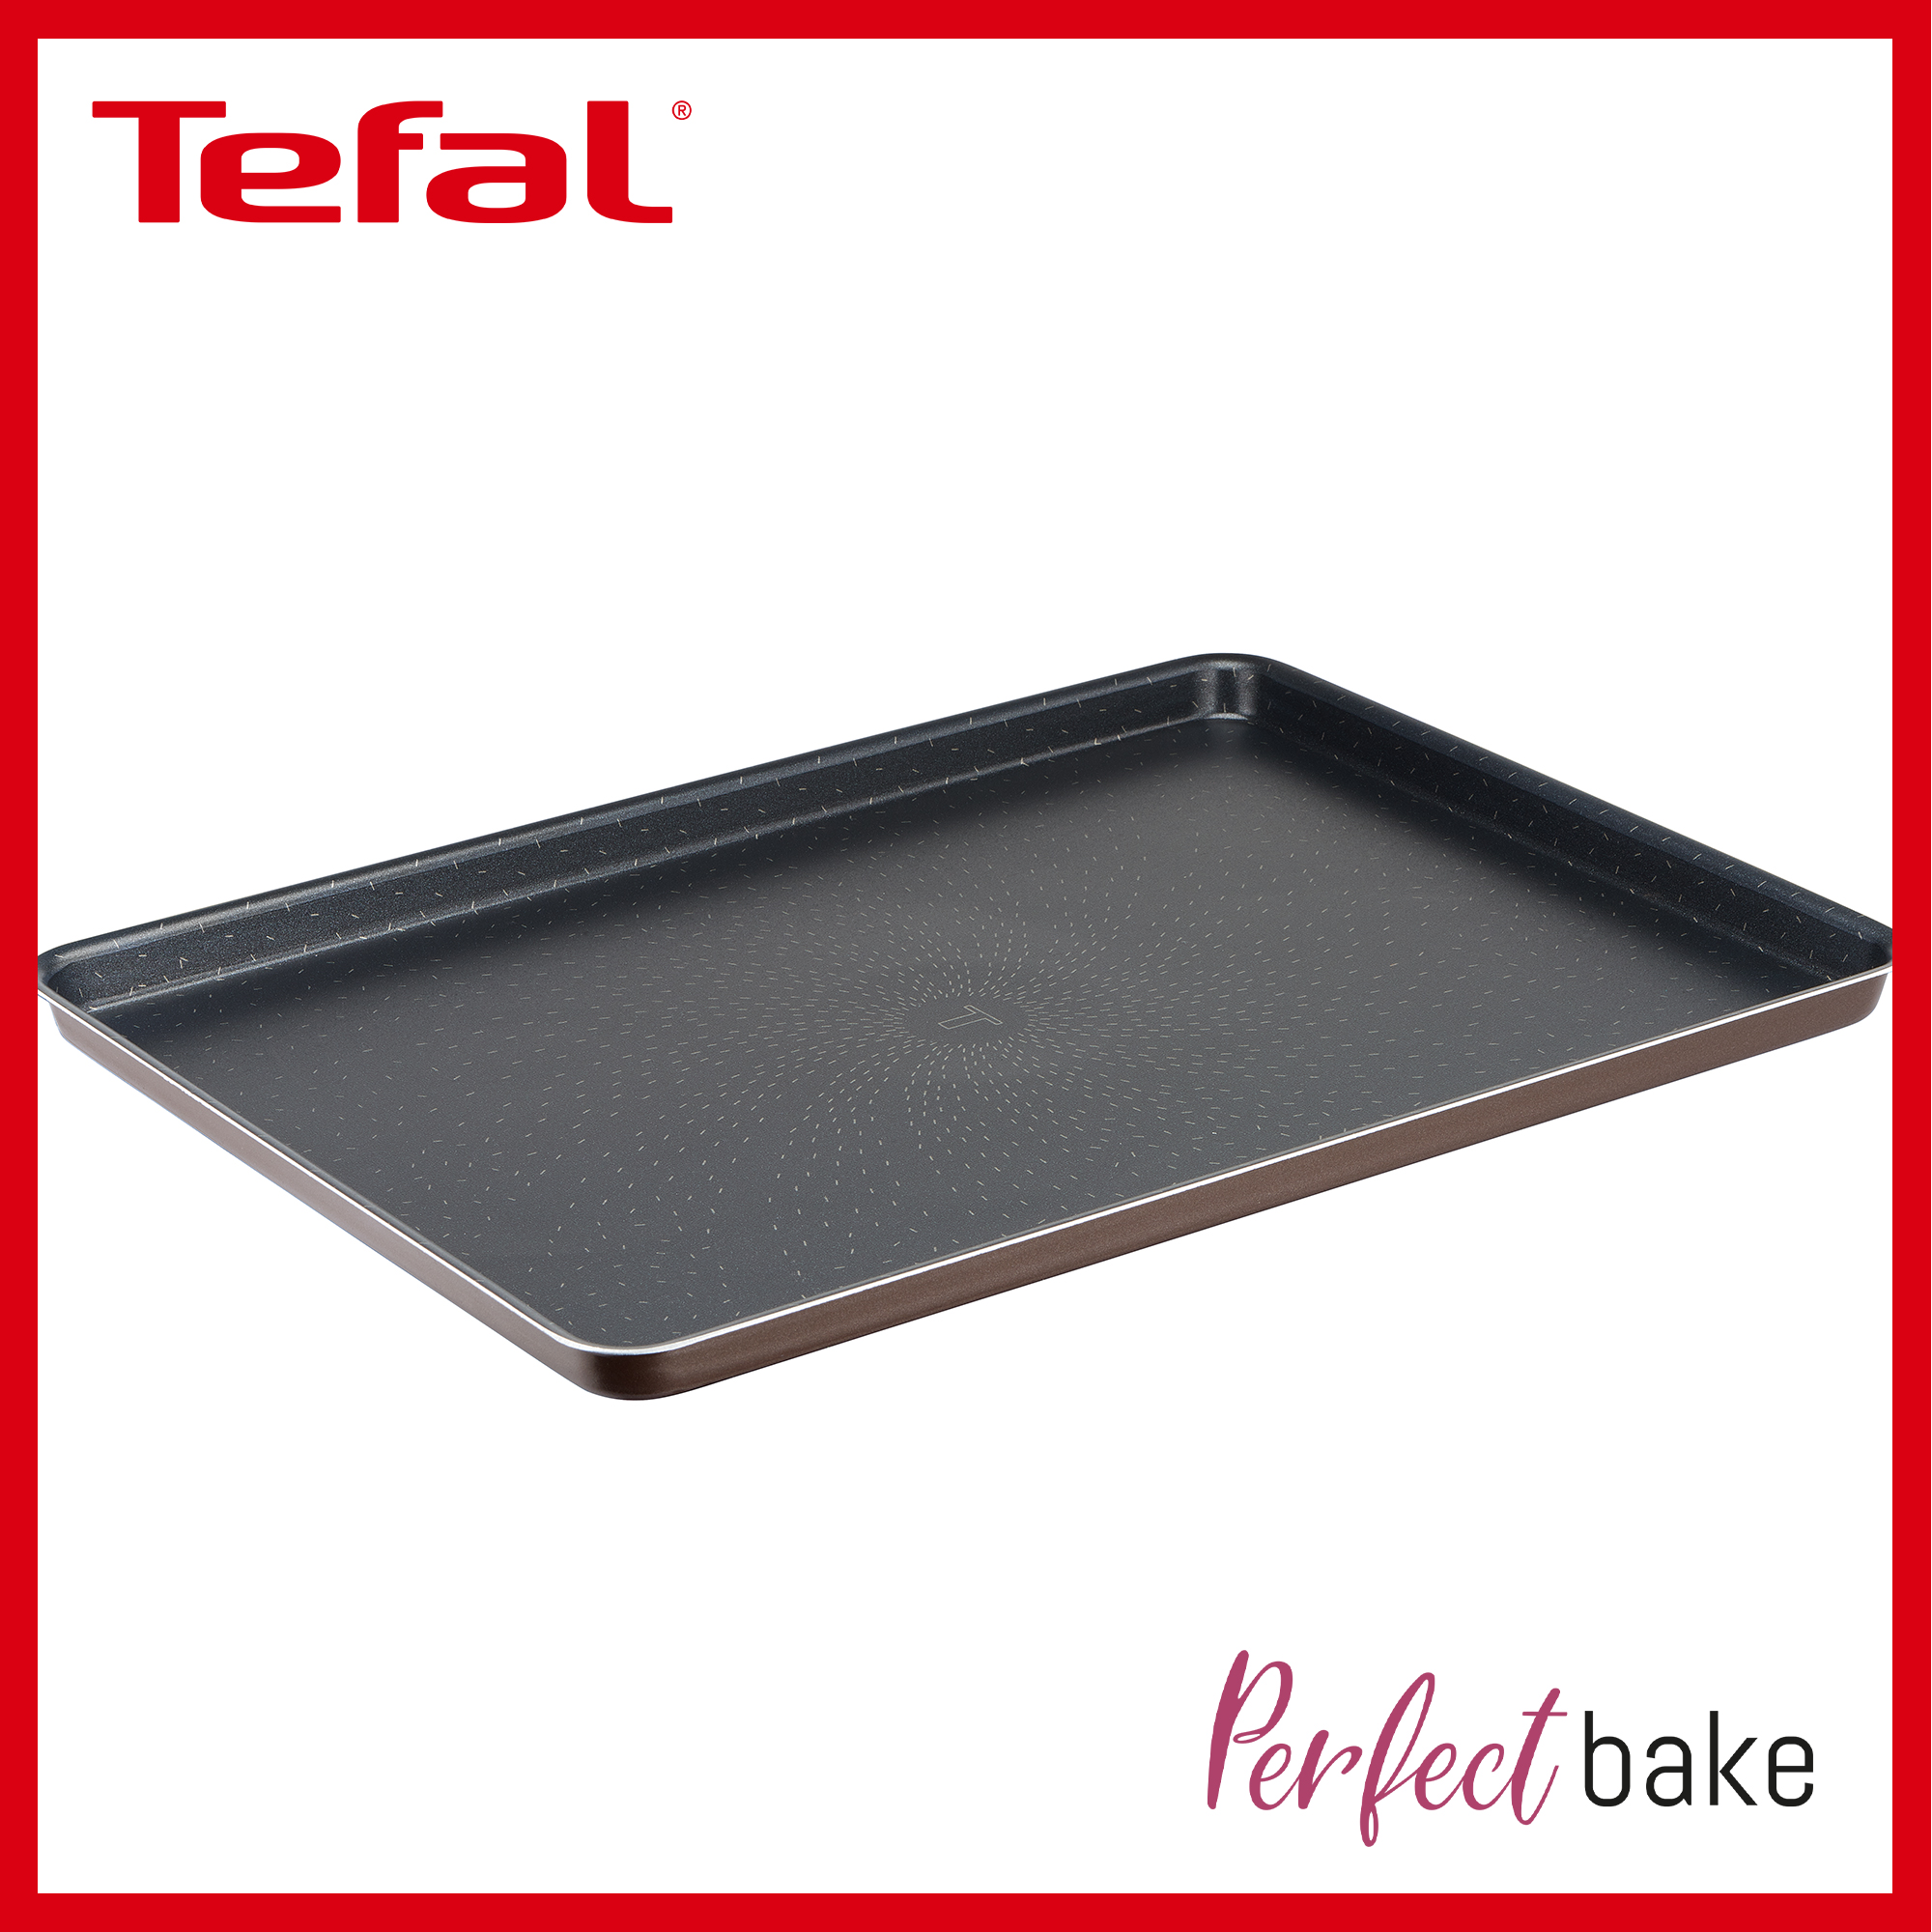 Tefal Perfectbake Baking Tray 38x28cm